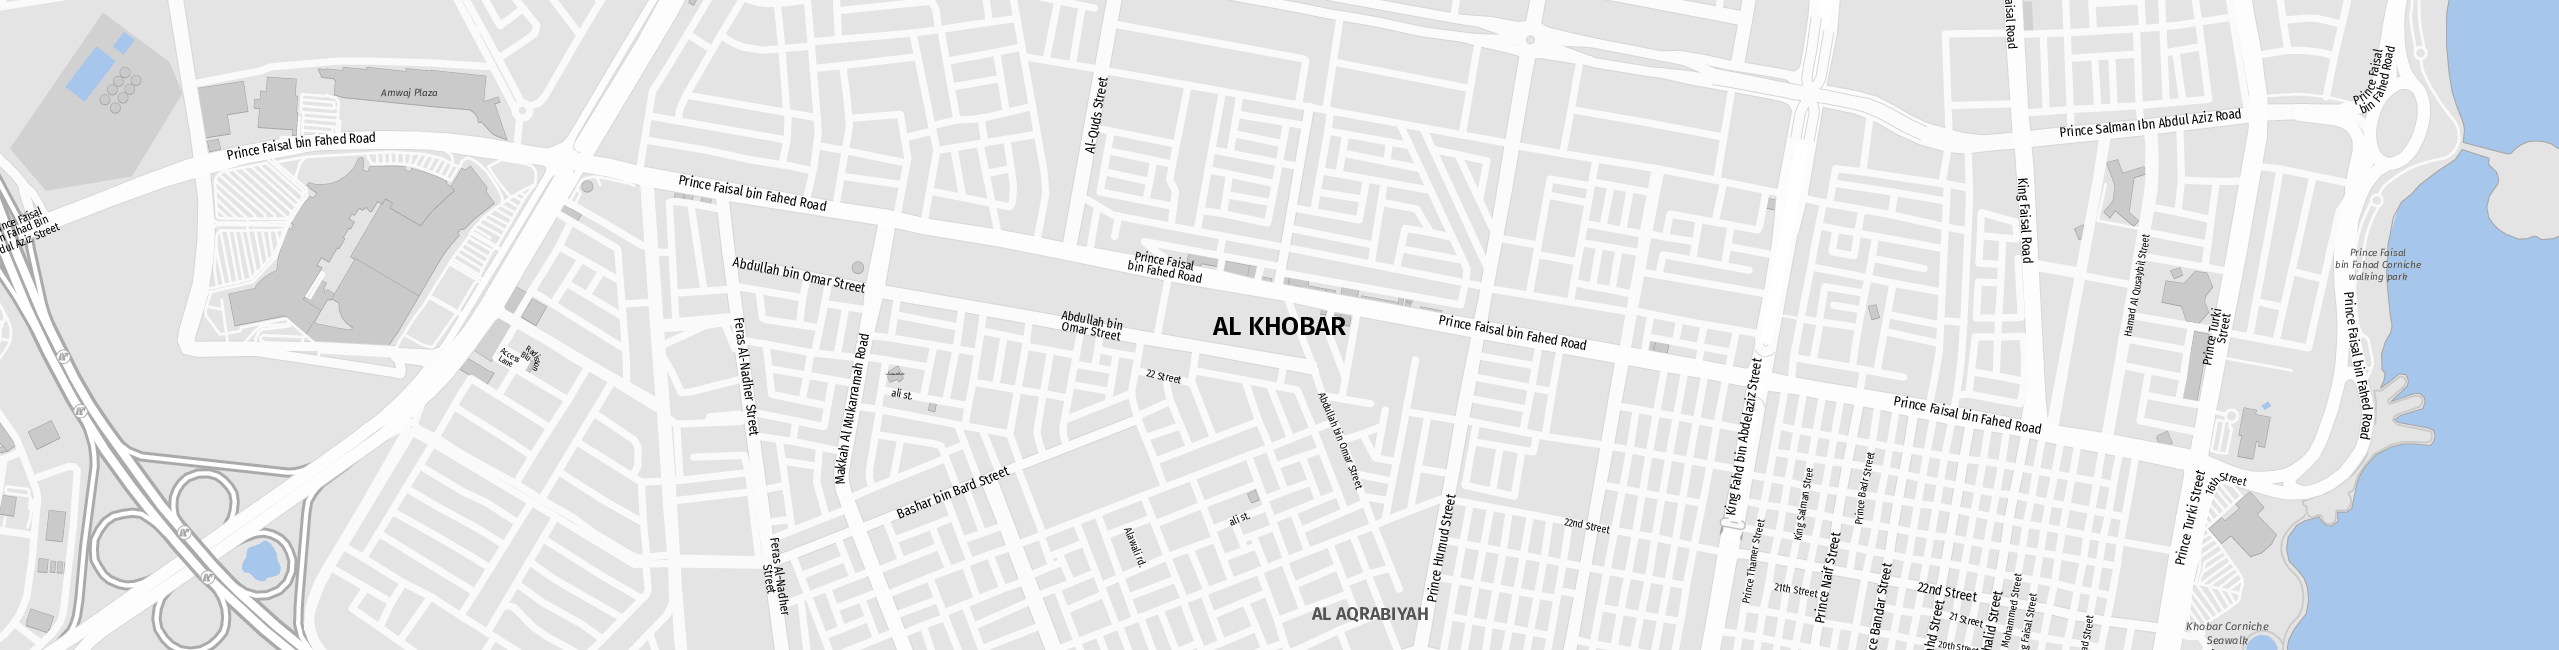 Stadtplan Al Khobar zum Downloaden.